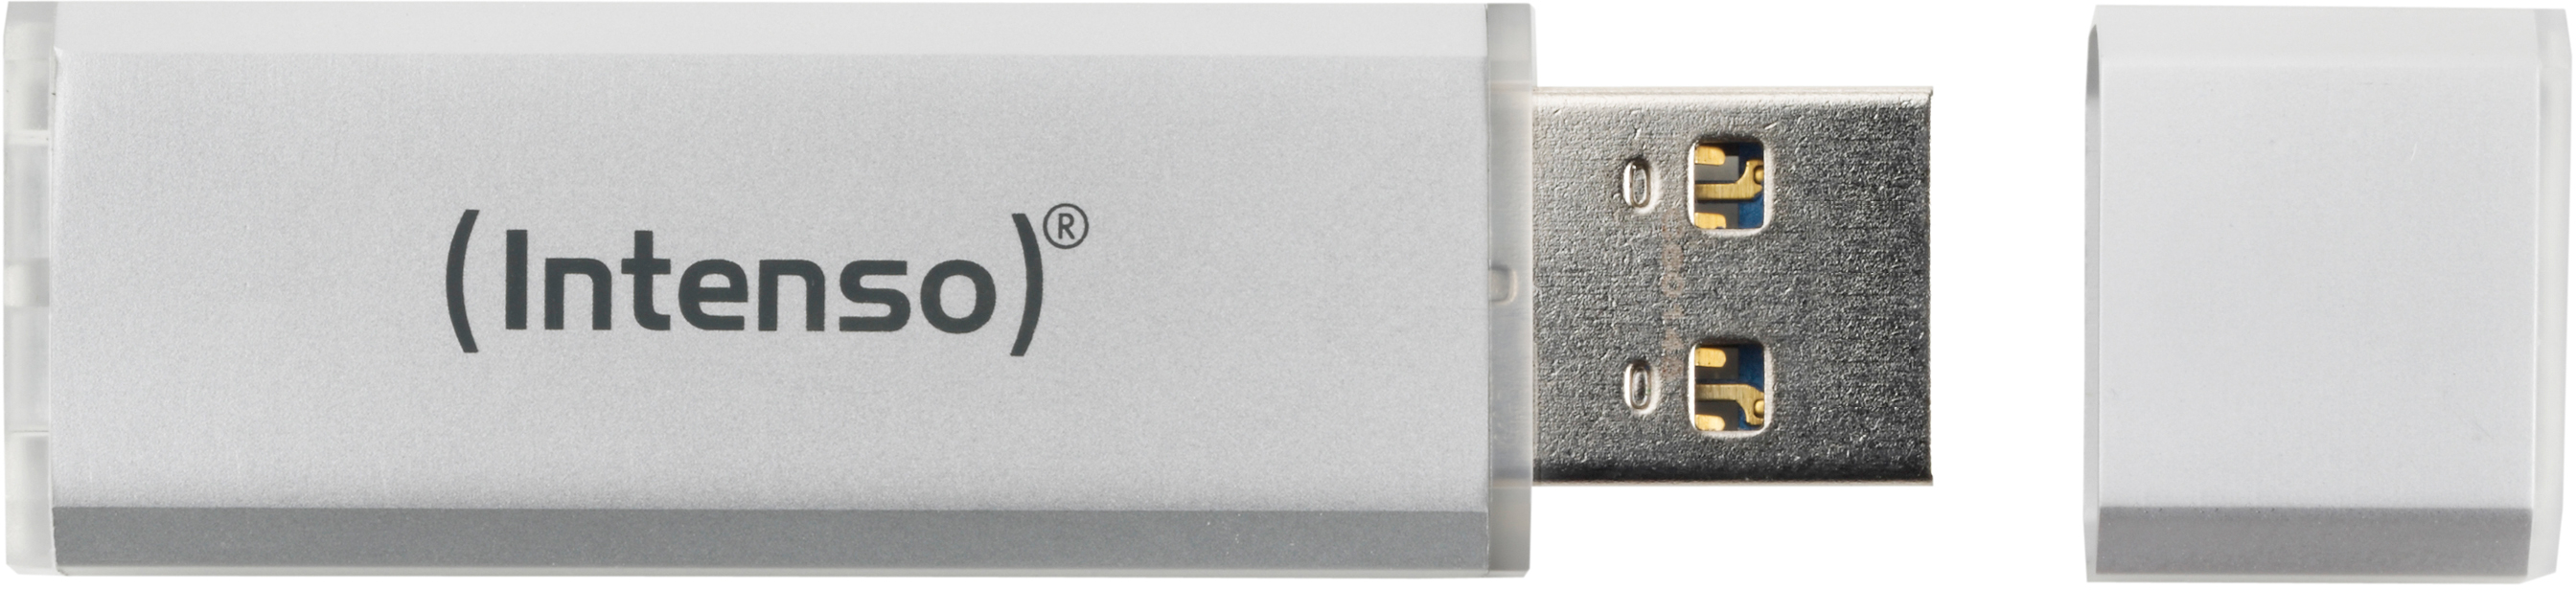 INTENSO USB-Stick Ultra Line 512GB 3531493 USB 3.0 USB 3.0